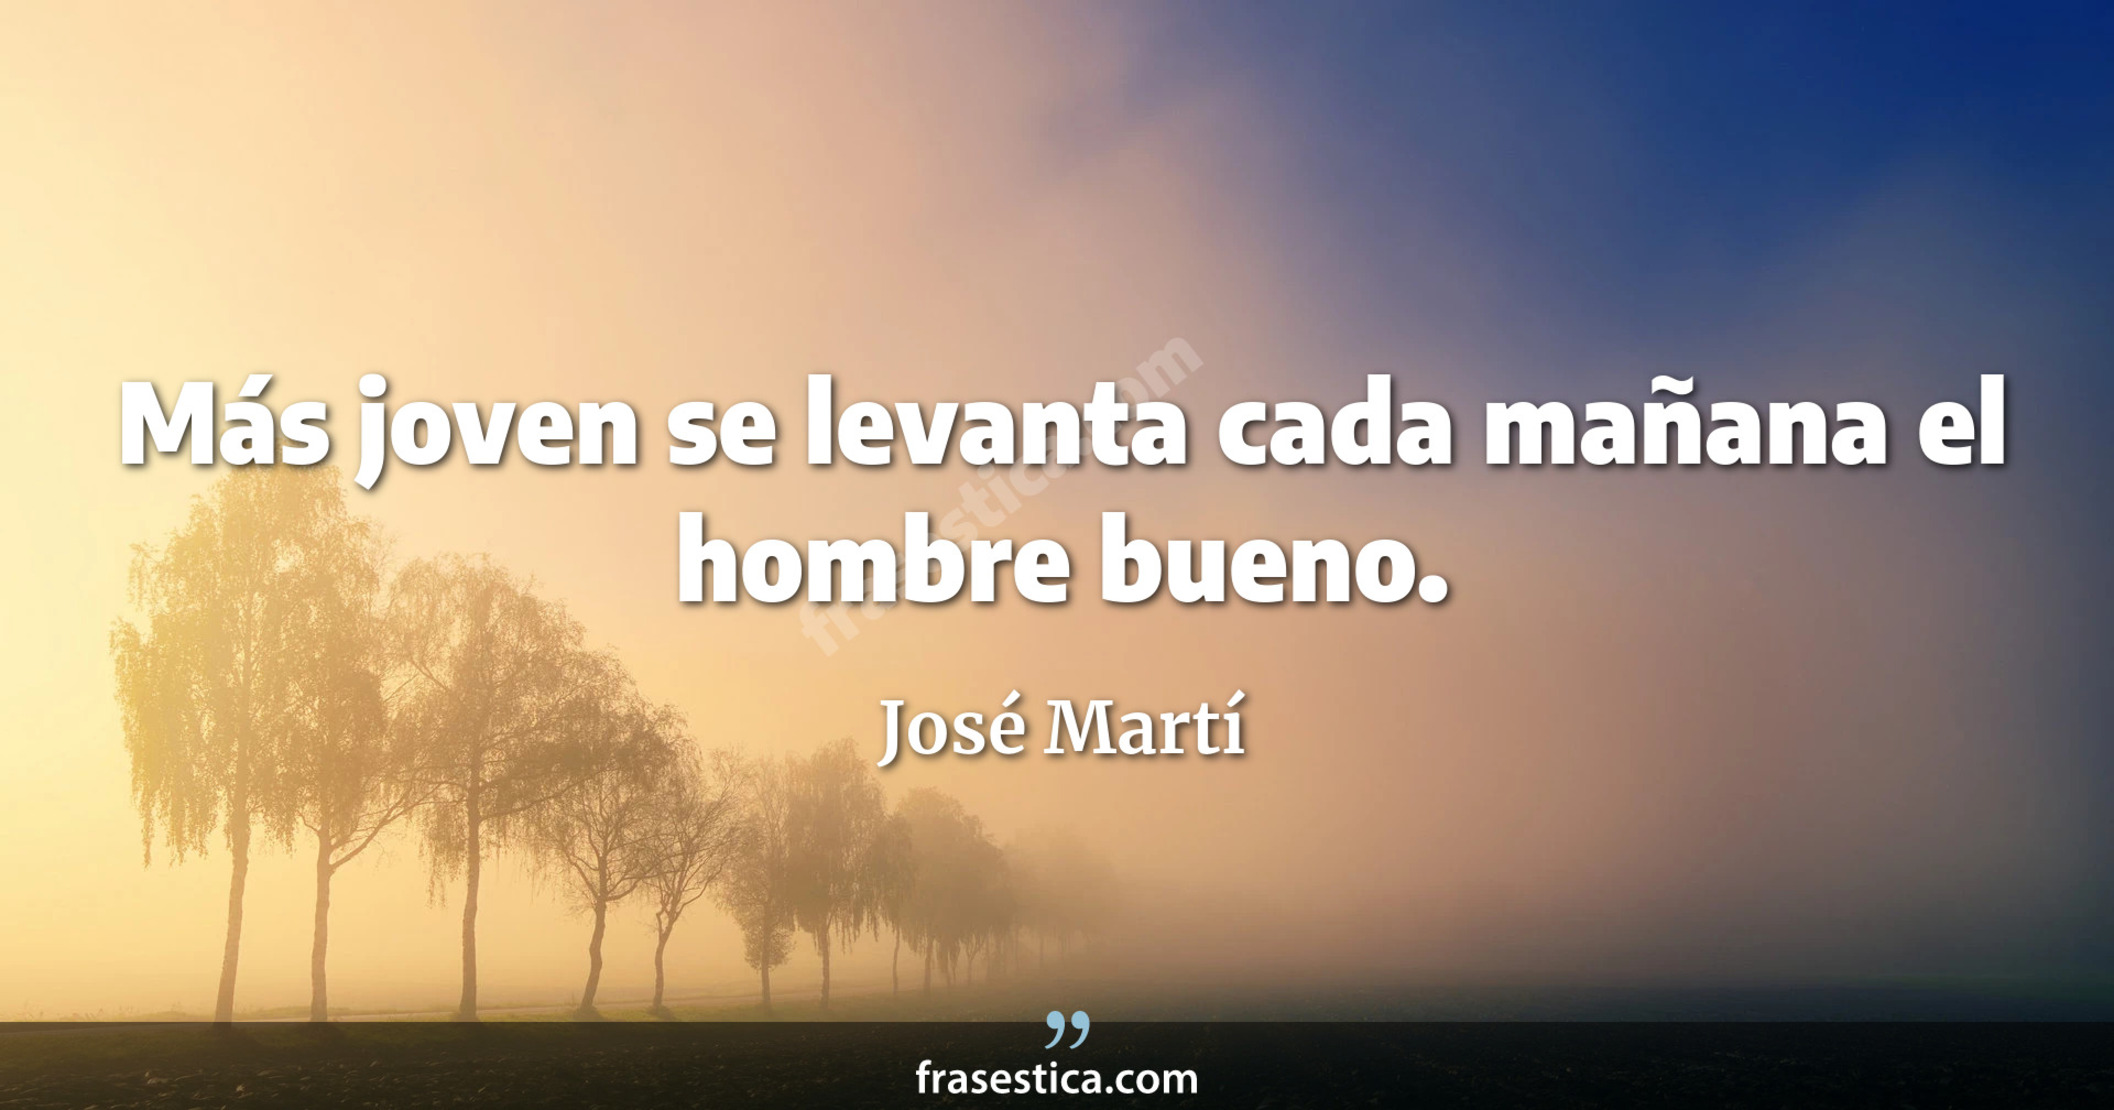 Más joven se levanta cada mañana el hombre bueno. - José Martí